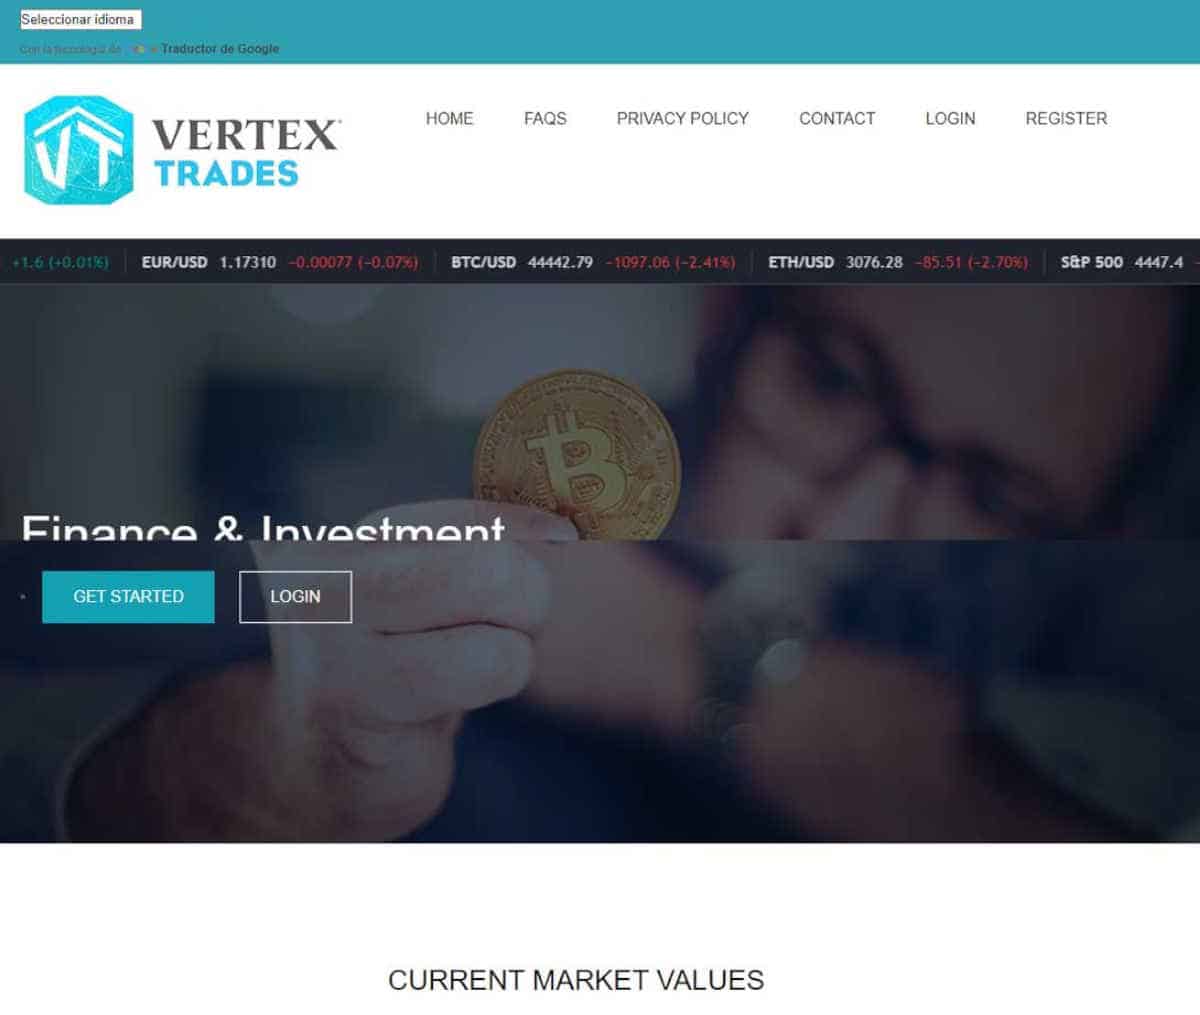 Página web de Vertex Trades